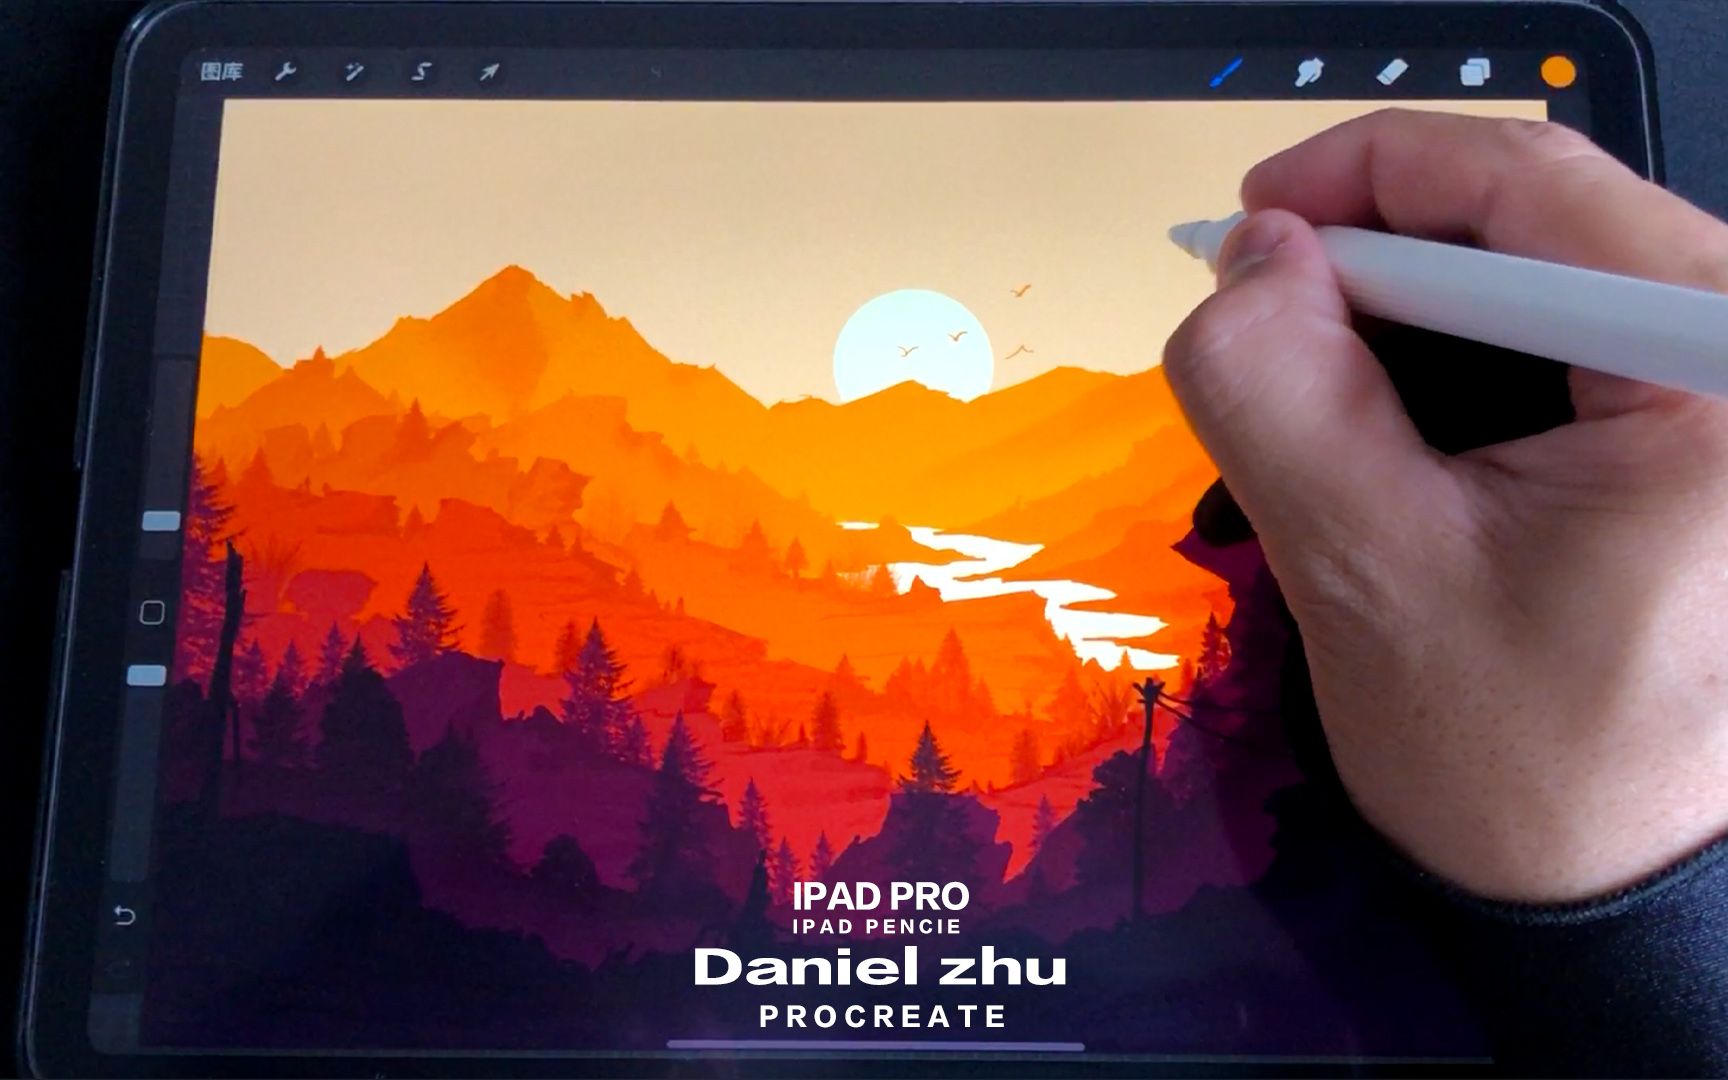 【Procreate】教你用iPad画画 第1部 唯美的风景画